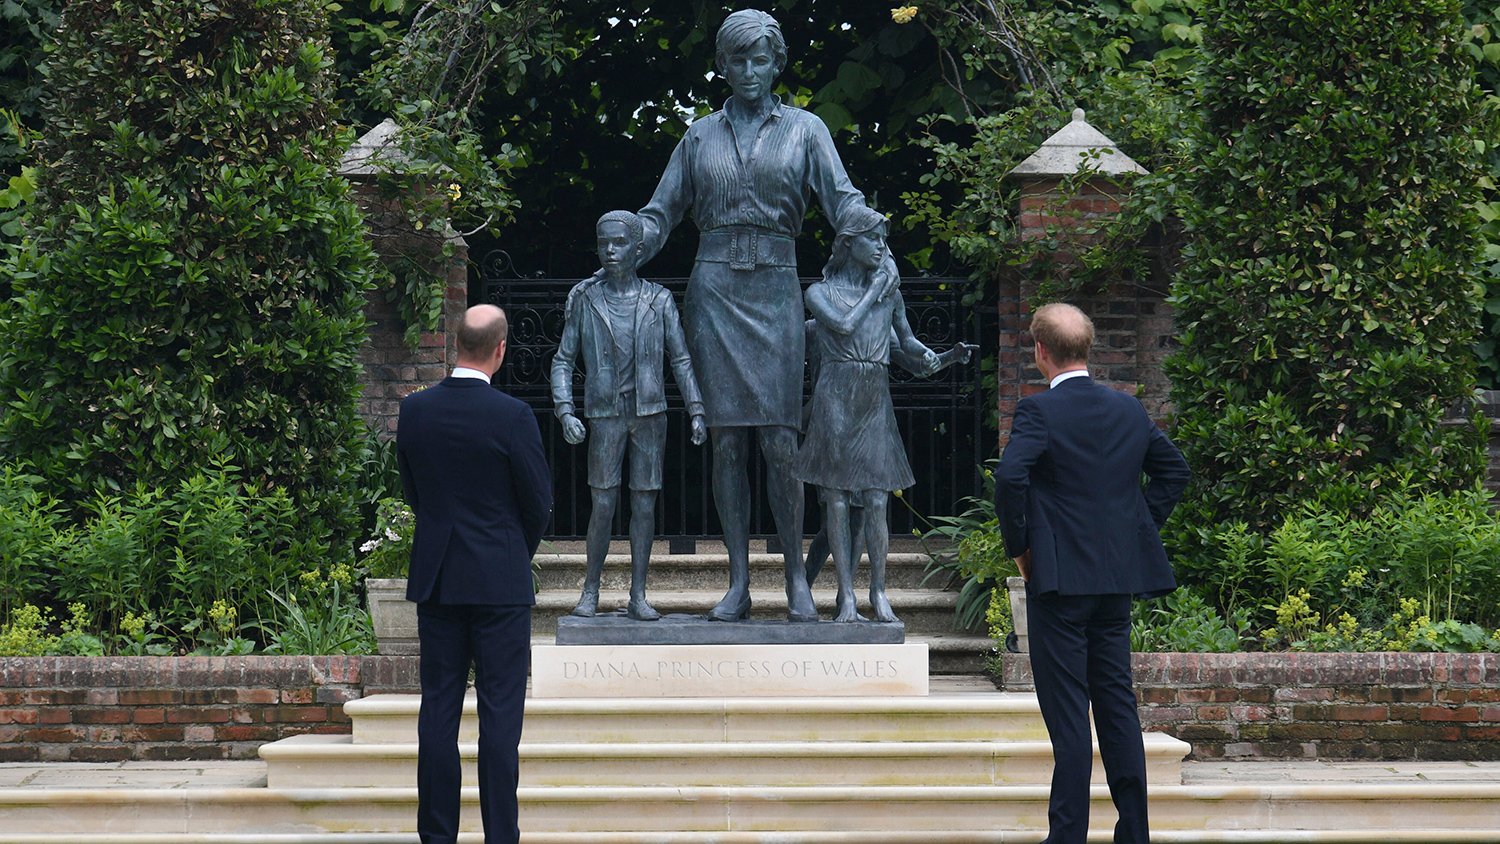 Արքայազններ Ուիլյամը և Հարրին Լոնդոնում բացել են արքայադուստր Դիանայի արձանը